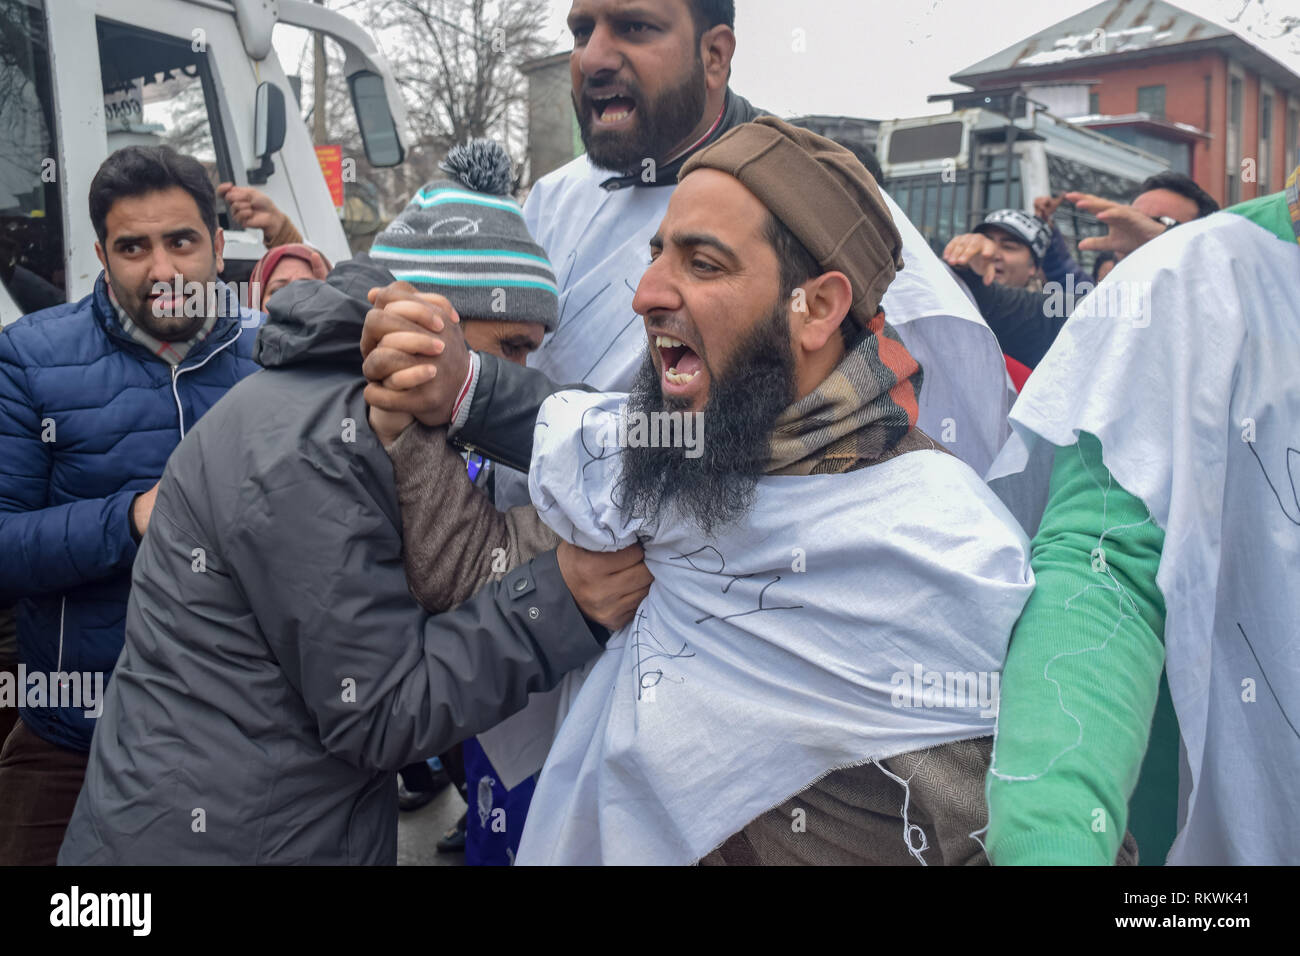 Februar 12, 2019 - Srinagar, Jammu und Kaschmir - ein Mitglied von Jammu und Kaschmir Polizei in civvies gesehen anordnende Mitglied der NHM-Mitarbeiter während des Protestes in Srinagar. NHM-Mitarbeiter (National Health Mission) auf eine anti-government Protests März in Richtung der Raj Bhavan in Srinagar. Die Mitarbeiter, die auf einem Streik seit der letzten dreißig Tage sind anspruchsvolle Regularisierung in Stufen, gleicher Lohn für gleiche Arbeit und anderen Leistungen der sozialen Sicherheit. Schlagstoecke eingesetzt auf die Demonstranten, und viele von ihnen wurden festgenommen während des Protestes. (Bild: © idrees Abbas/SOPA Ima Stockfoto